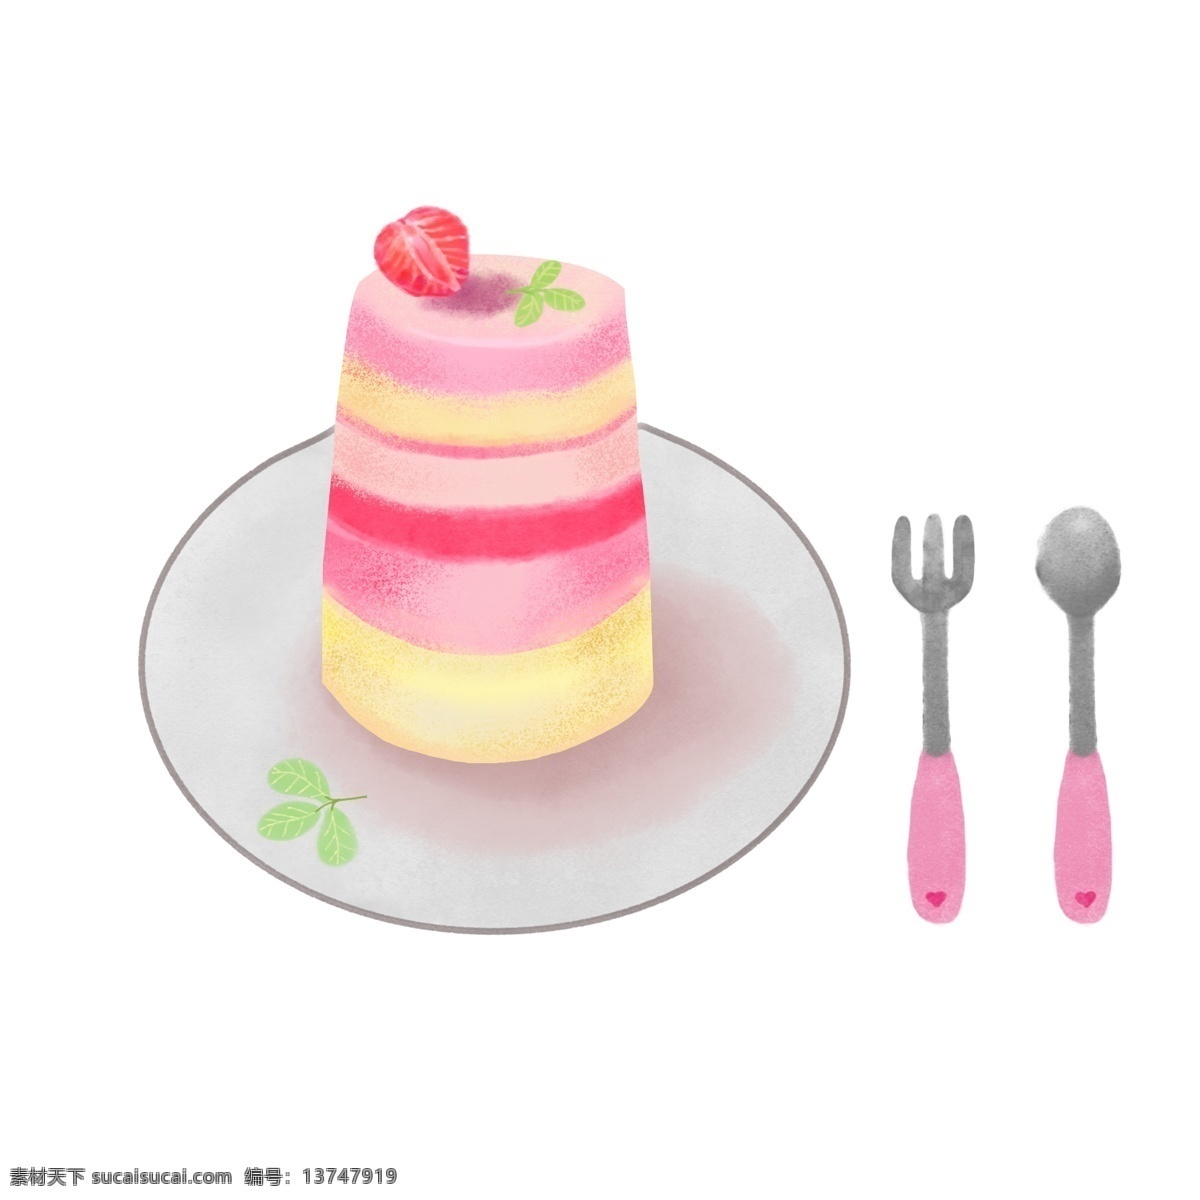 手绘 卡通 蛋糕 插画 爱情 情人节 手绘蛋糕 卡通蛋糕 美味 草莓 味 美食 食物 甜食 甜品 叉子 儿童勺子